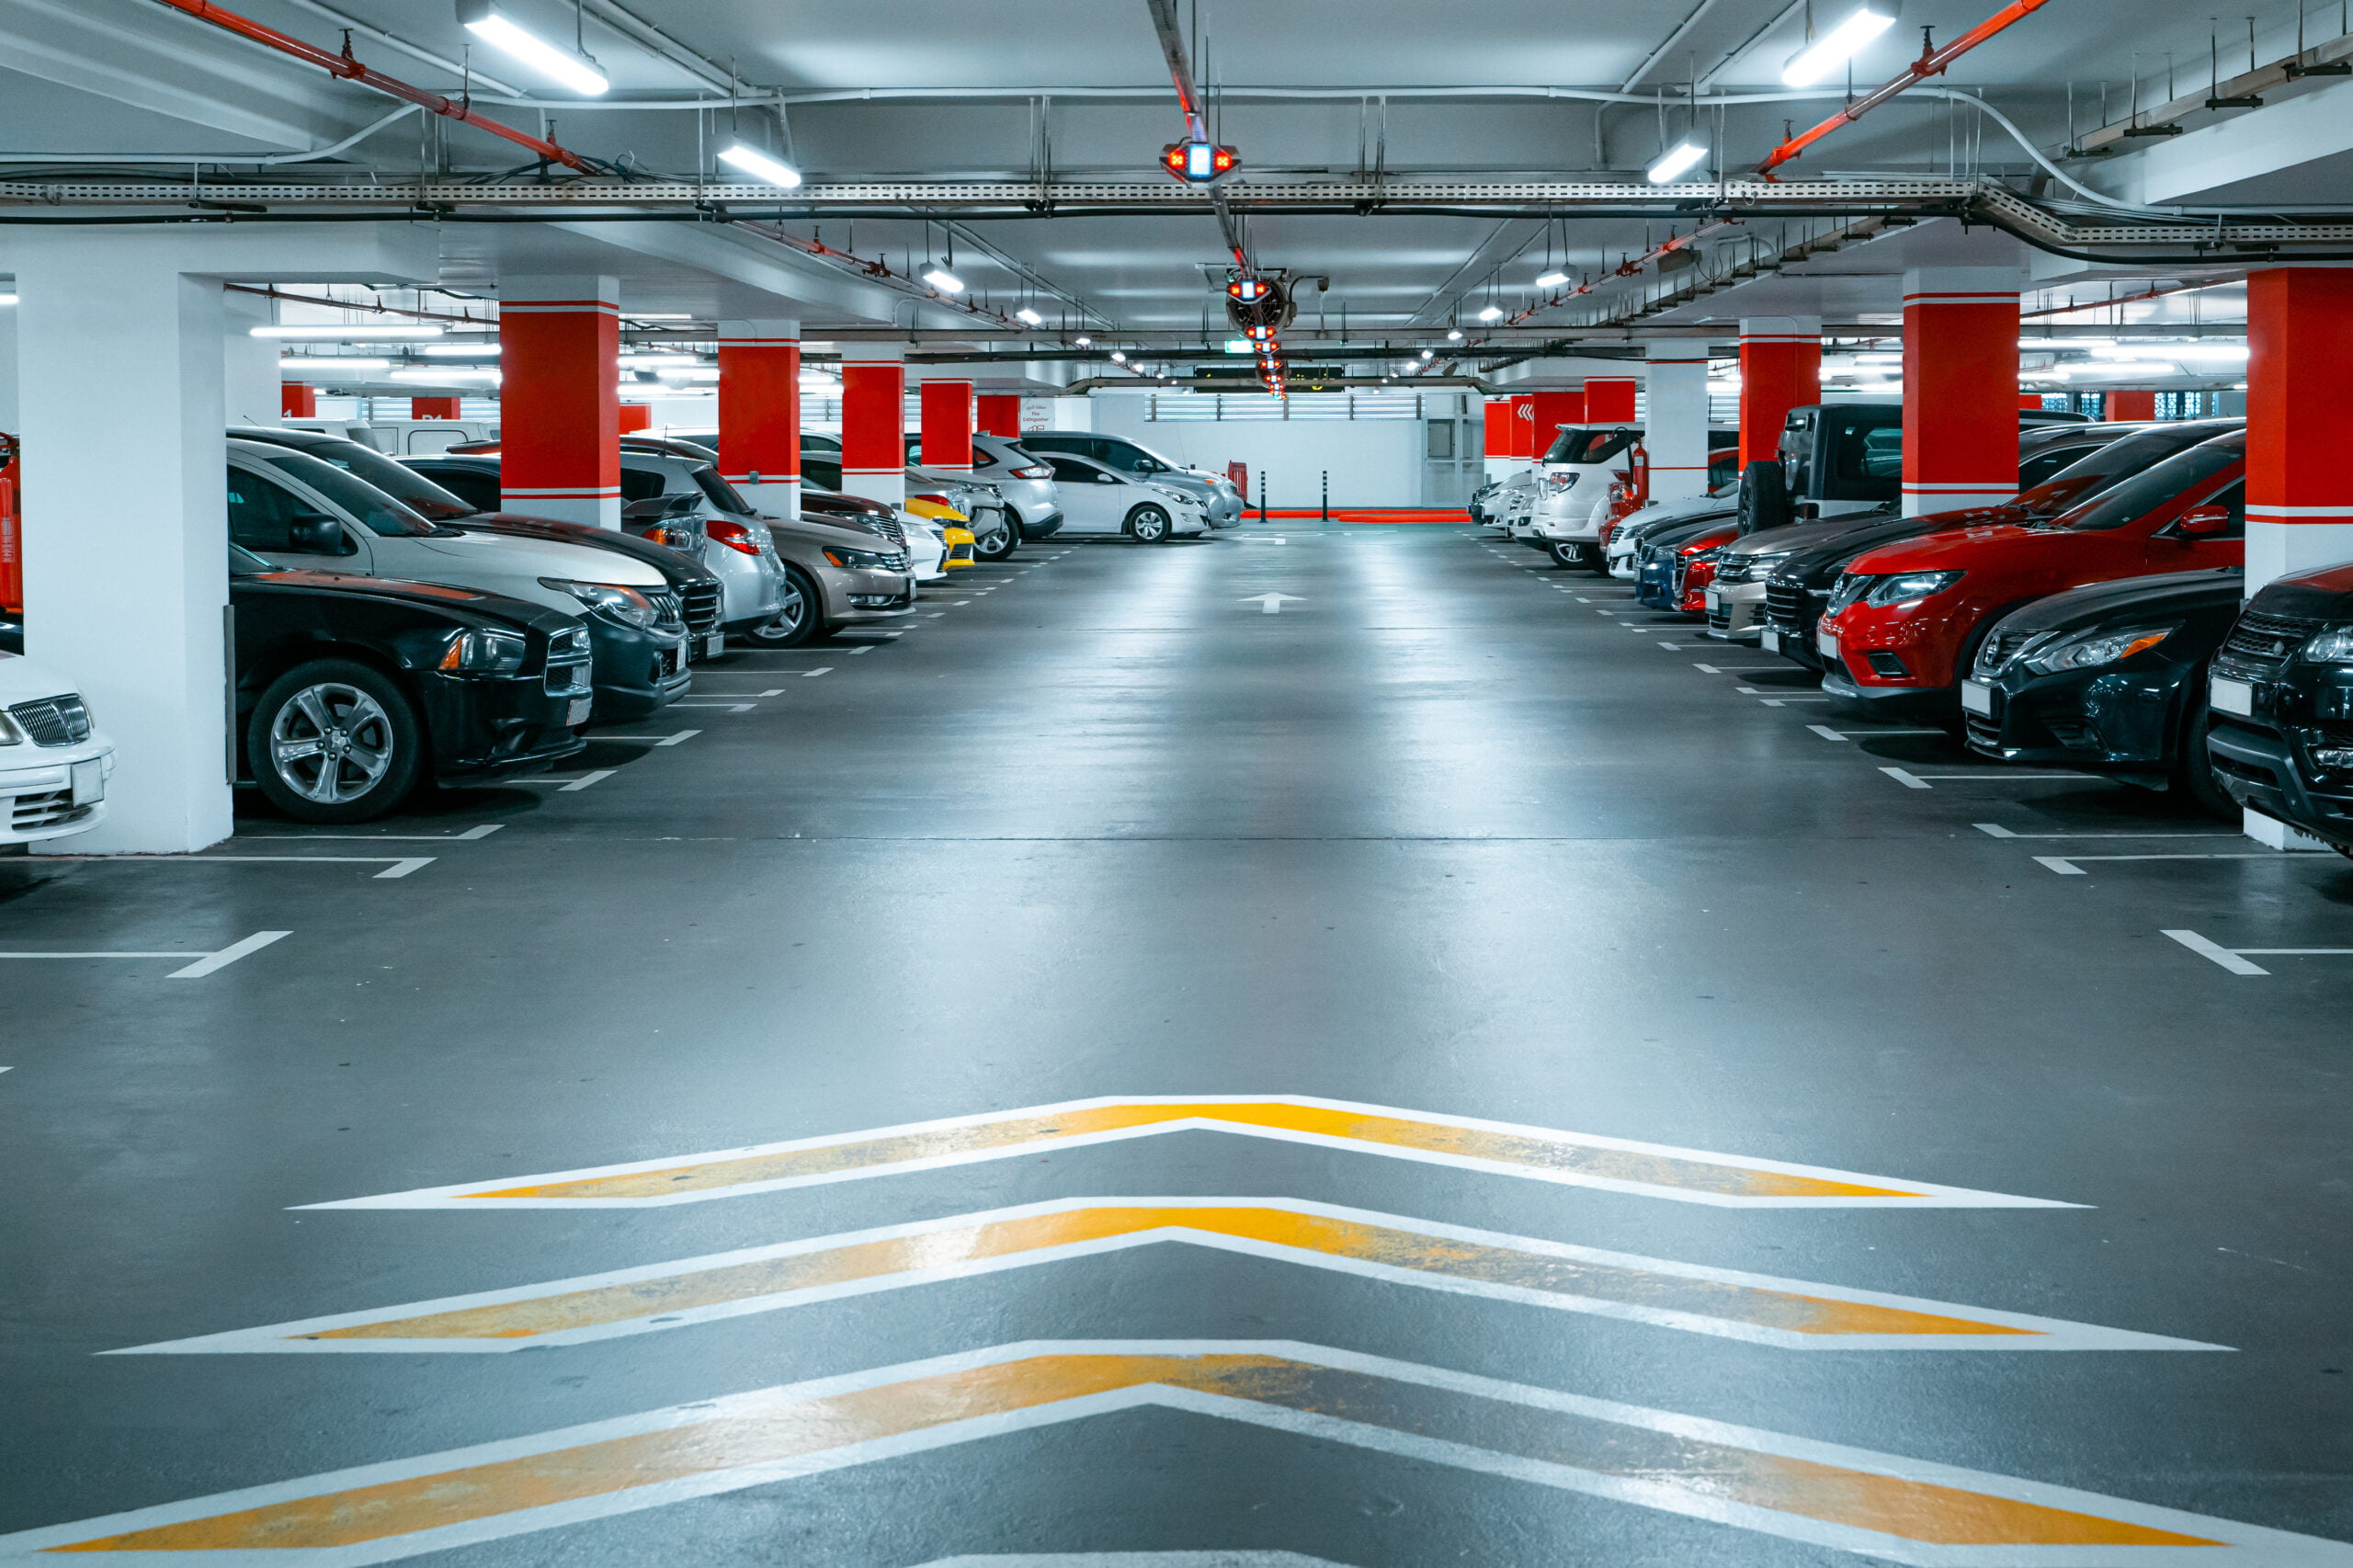 Parking garage underground interior background or texture